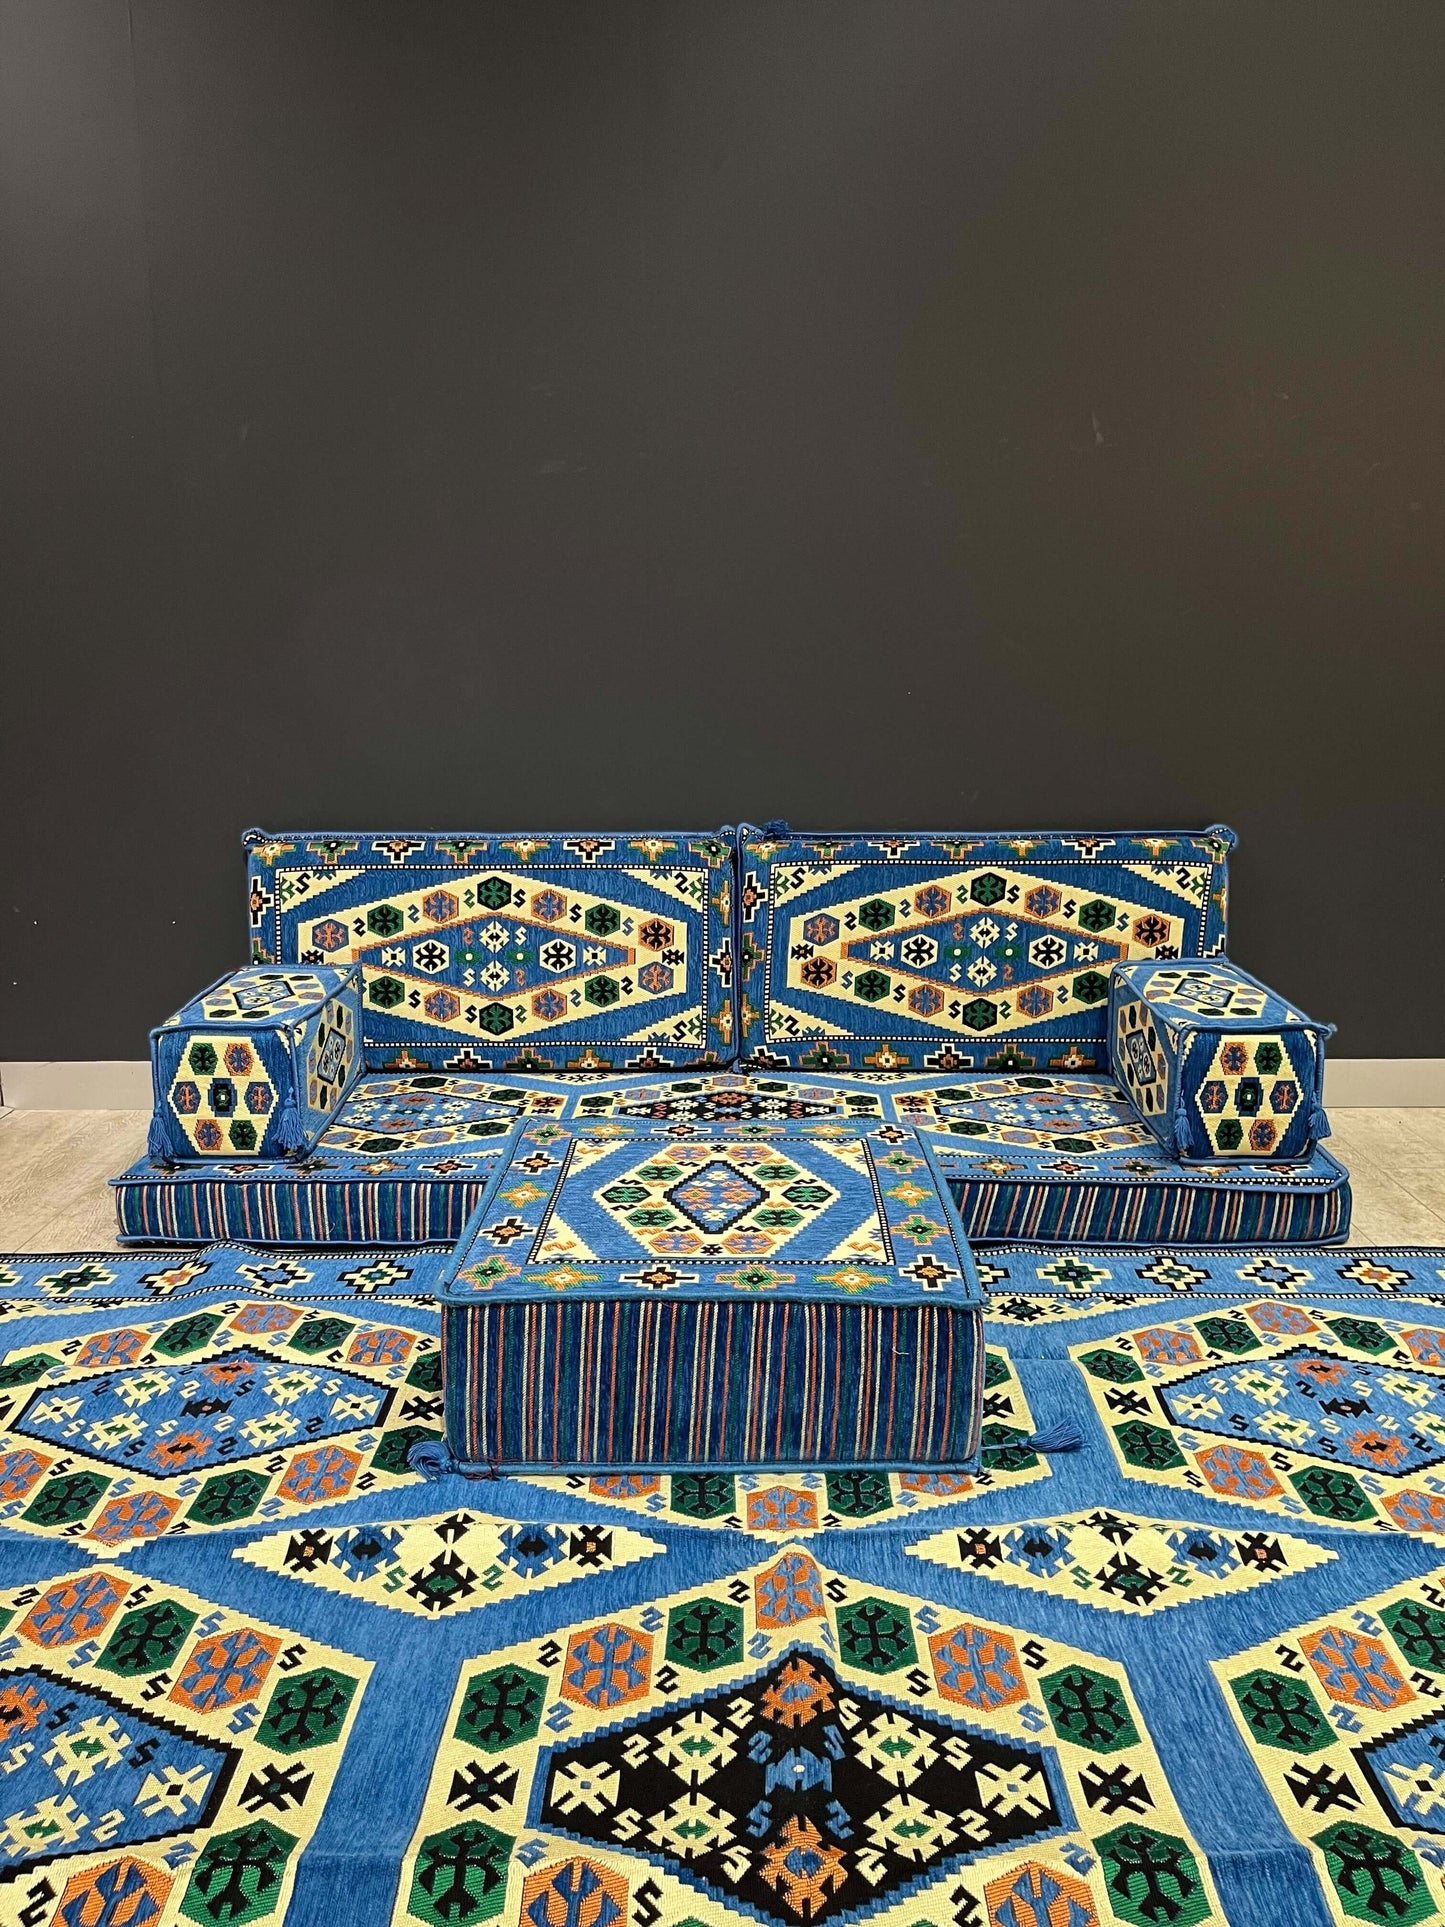 Arabian Majlis (Full Arabic Seat) Blue Royal Arabic Seat   